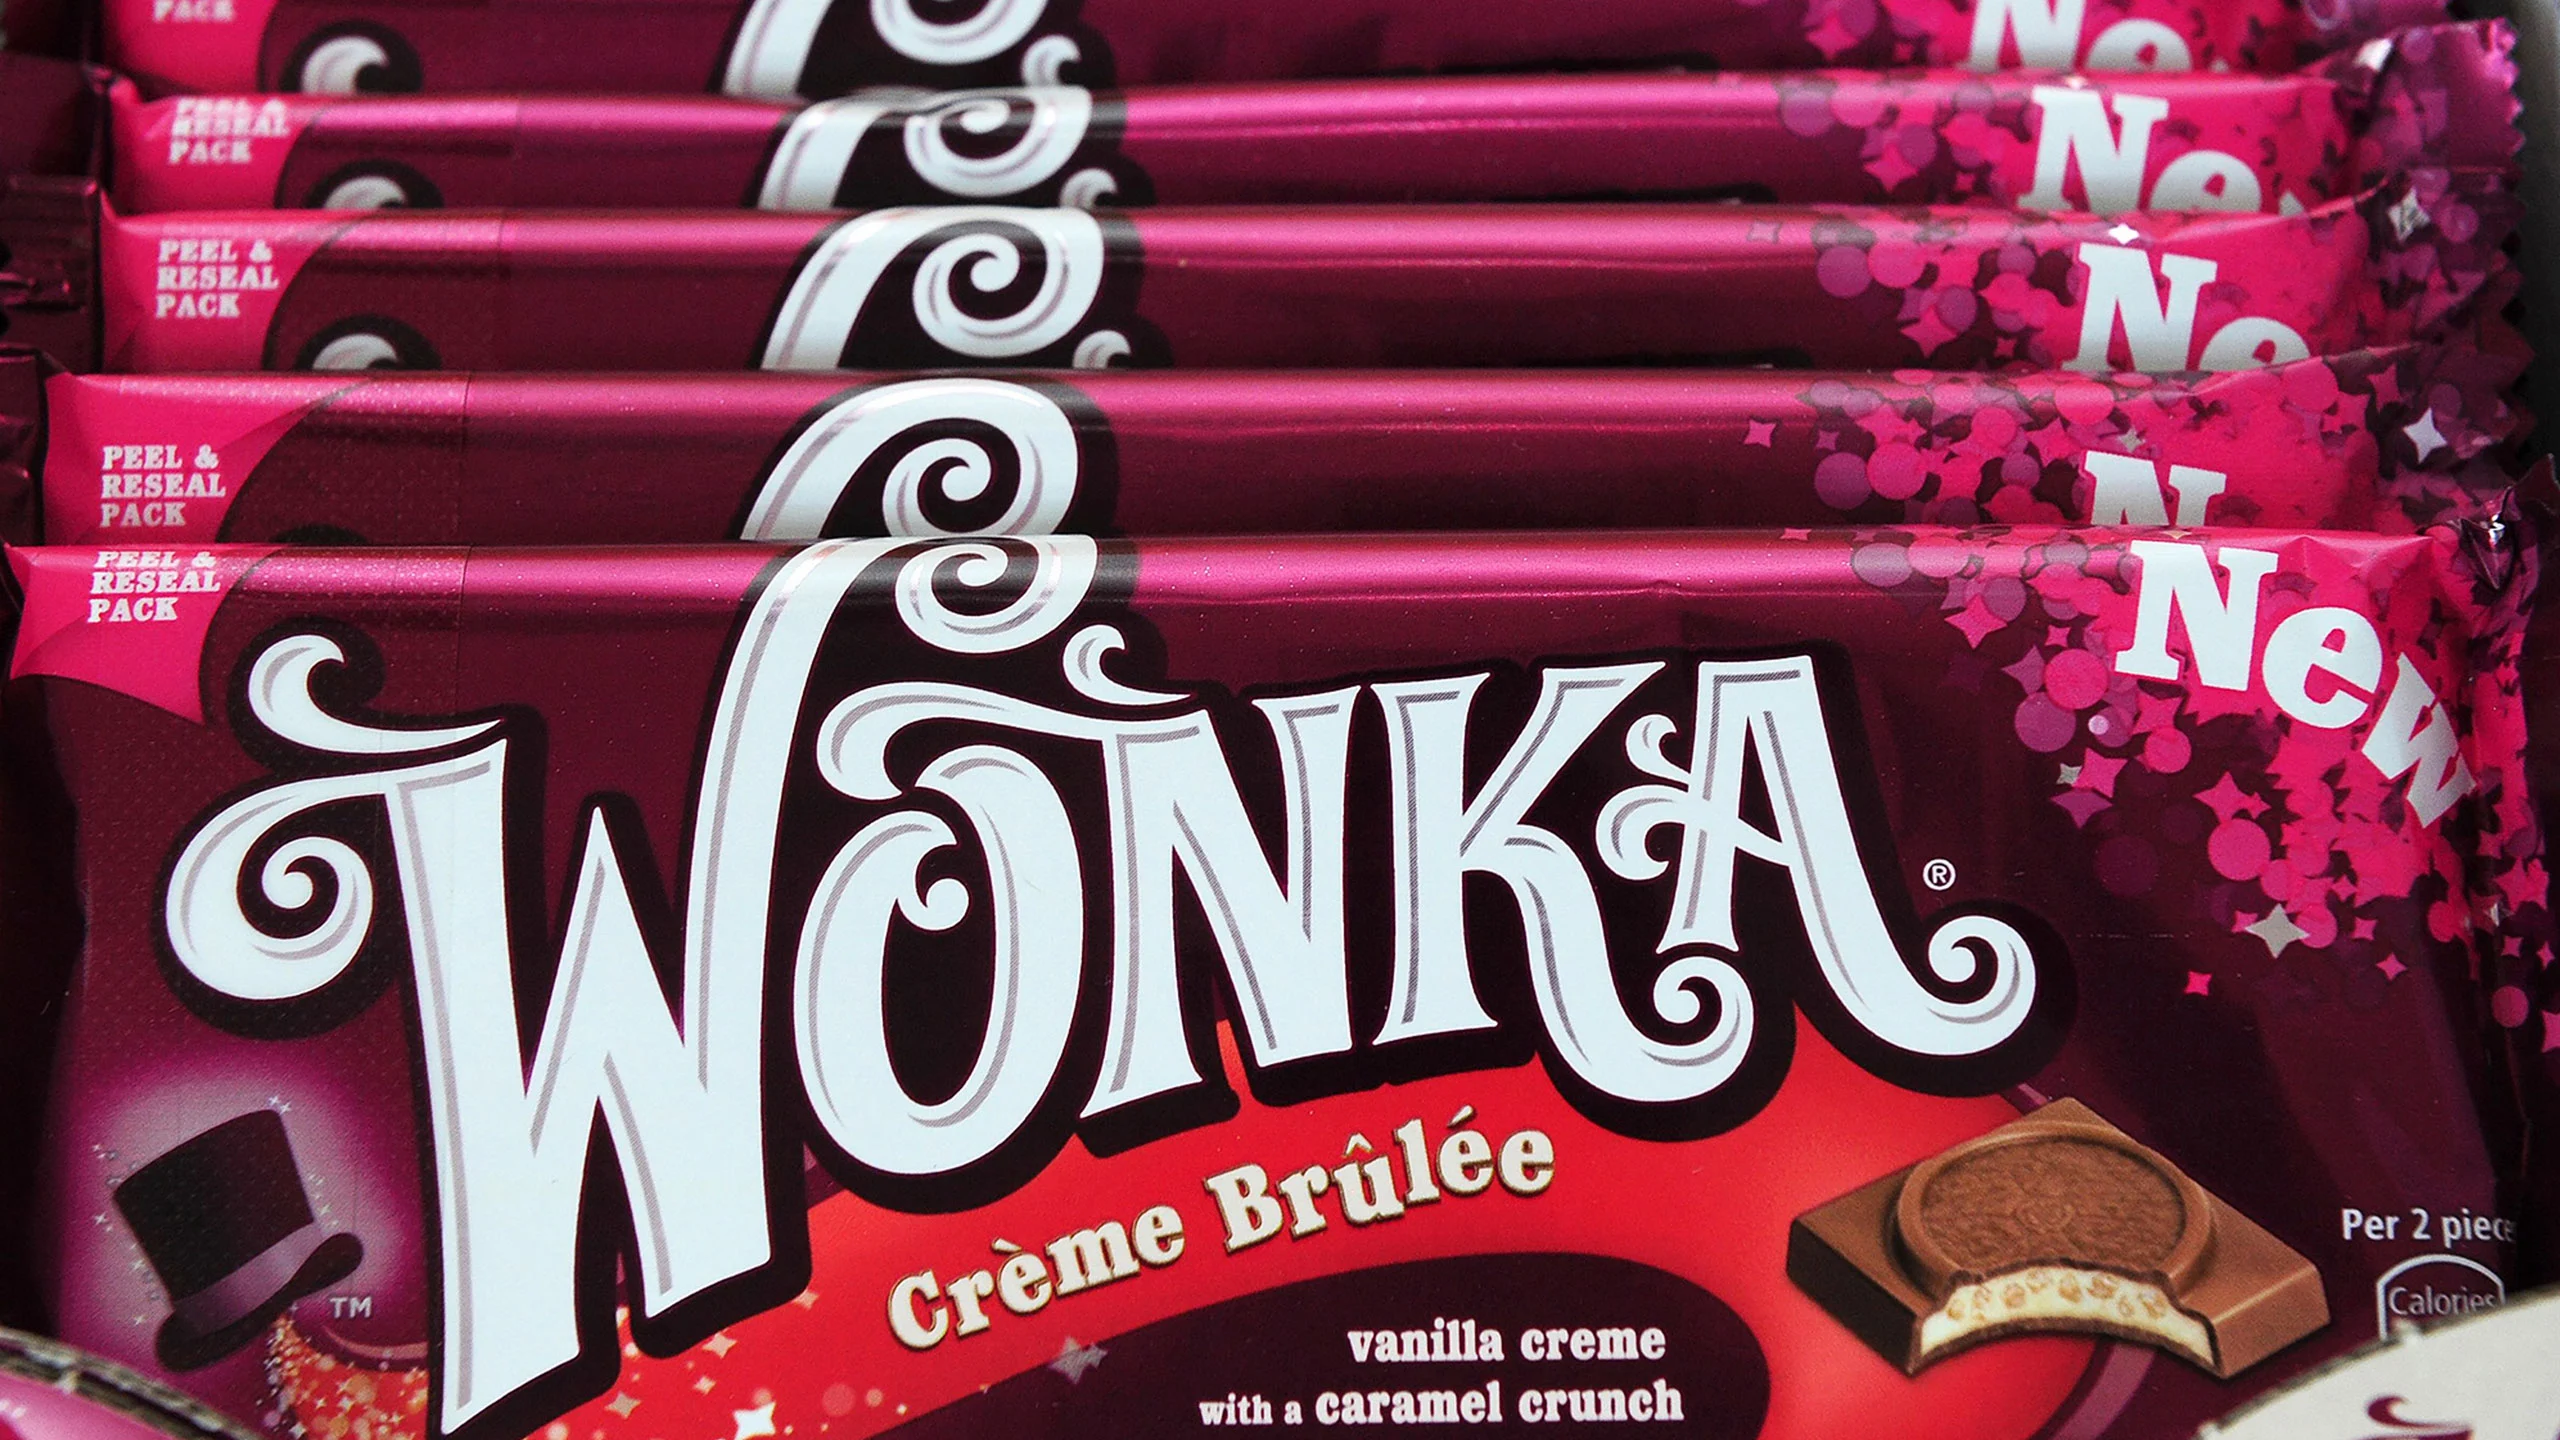 Denuncian barras de Wonka falsificadas a tiendas del Reino Unido